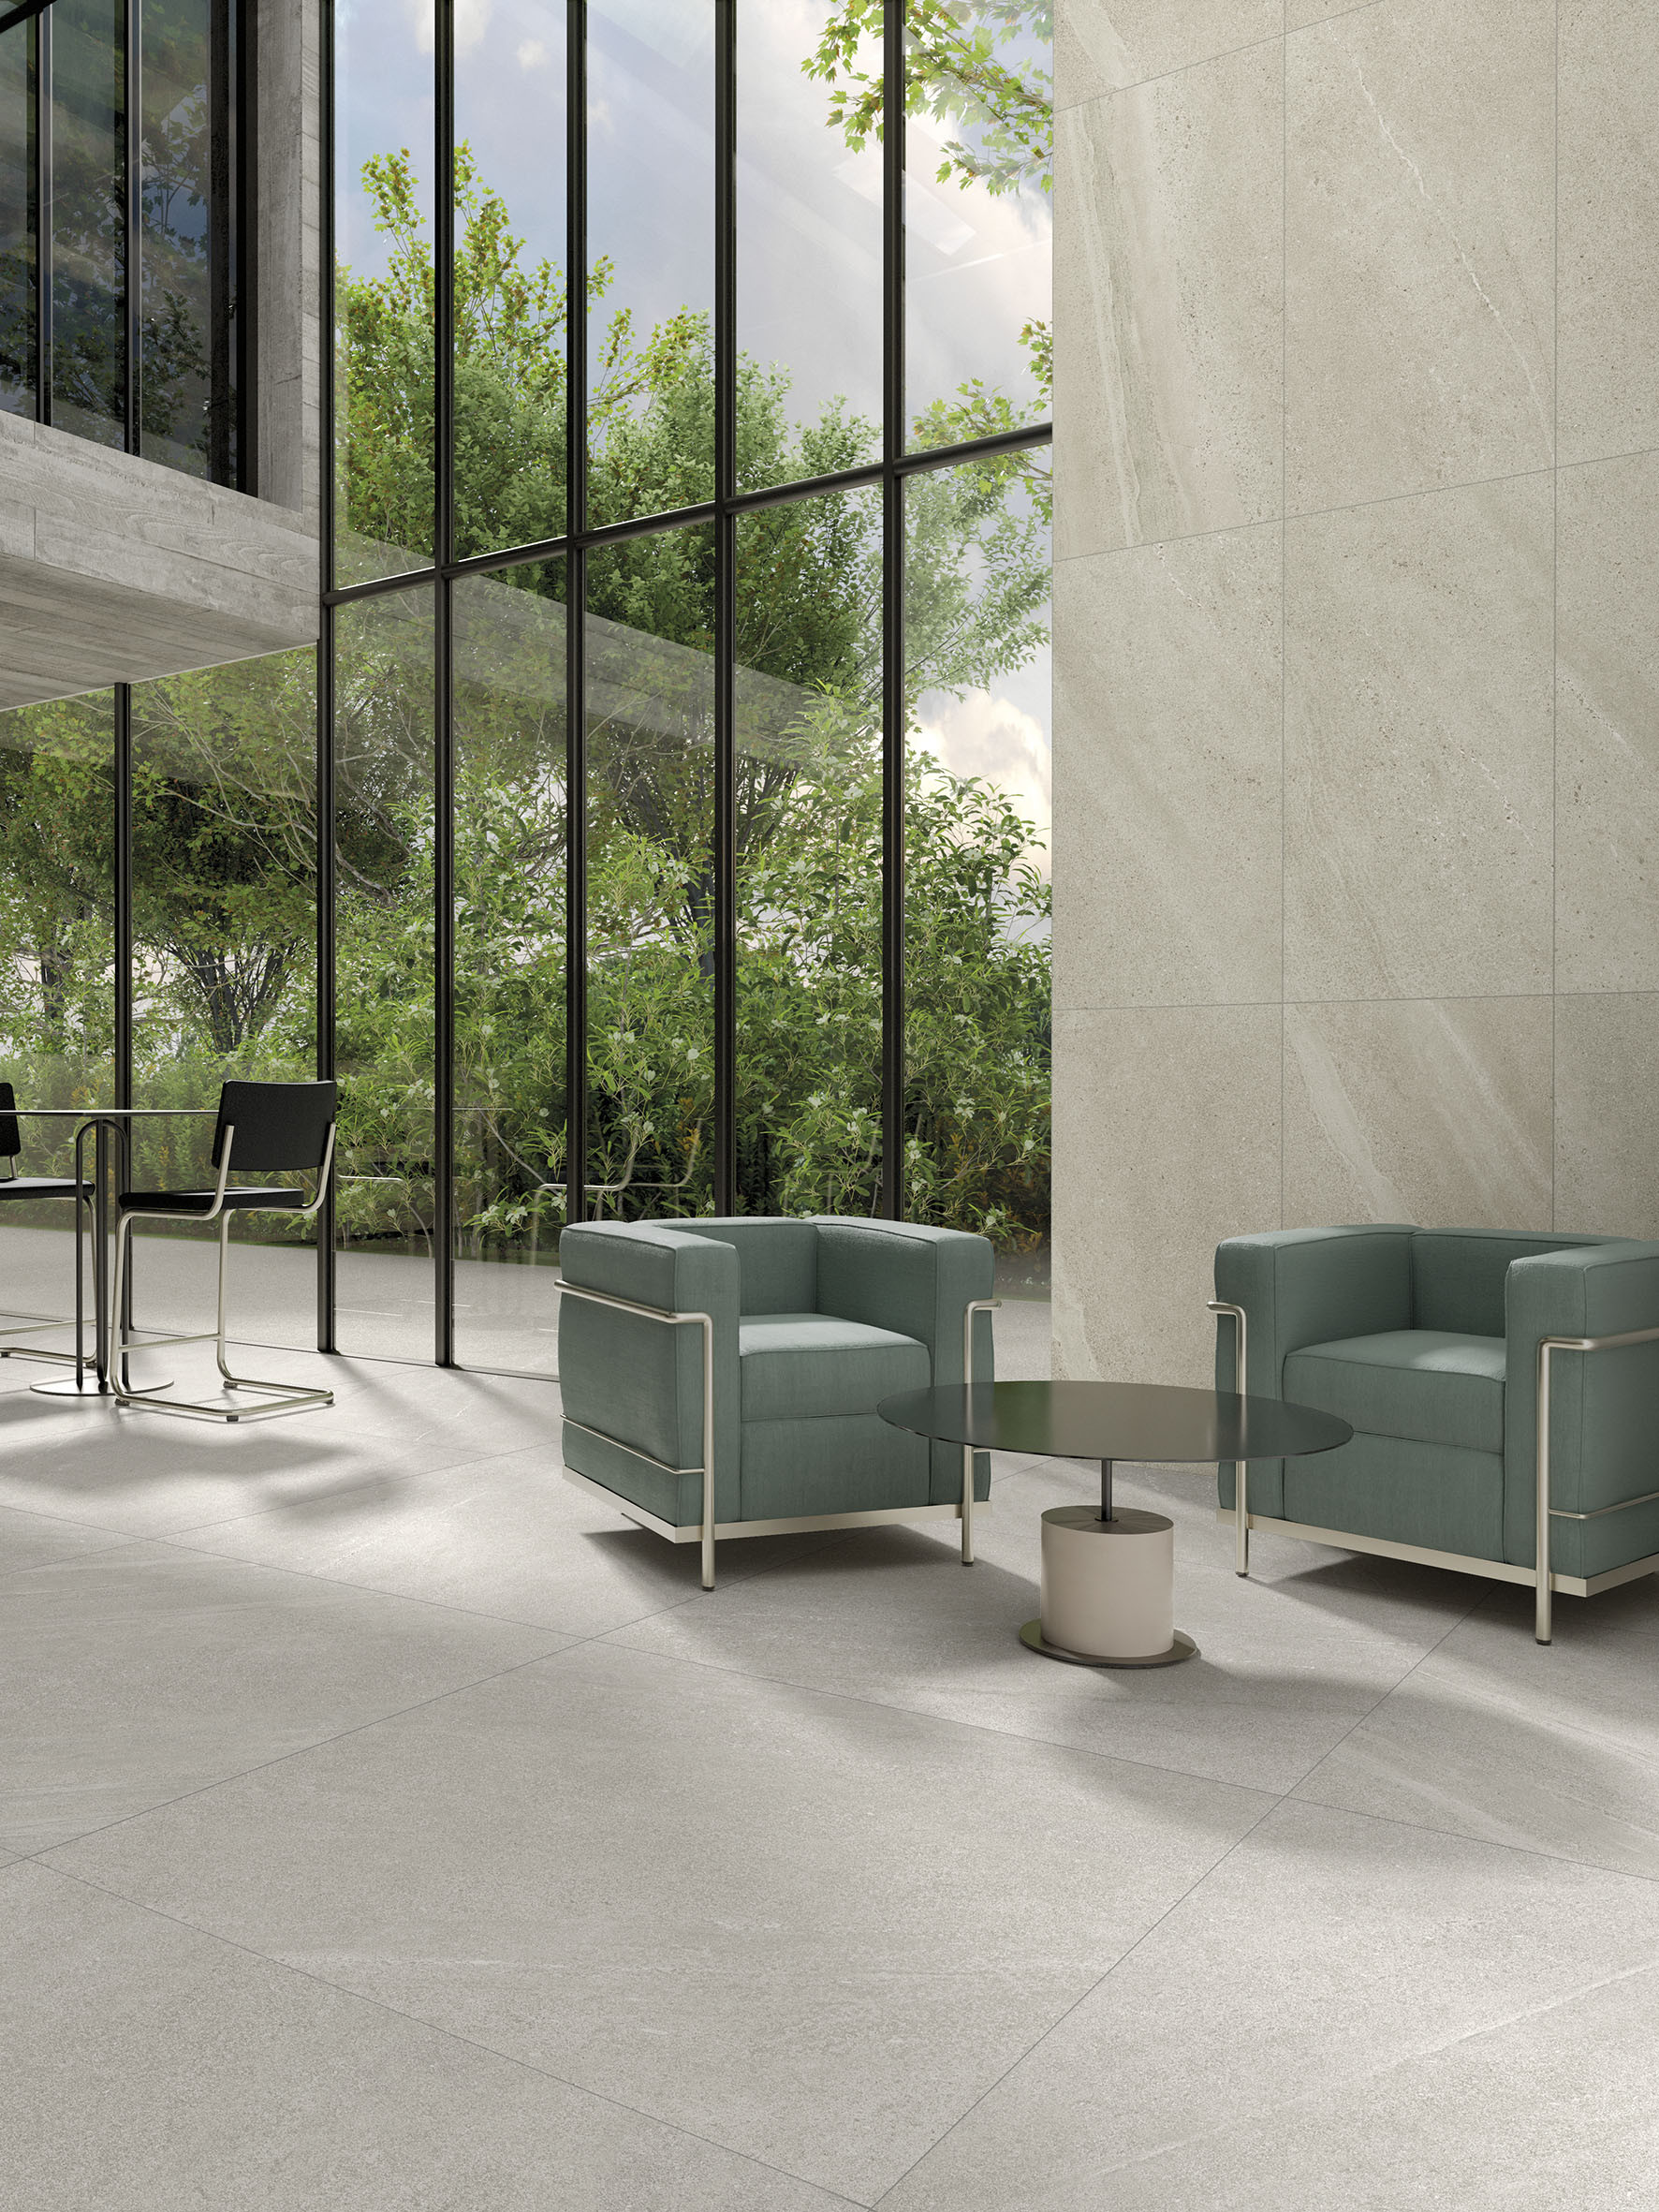 LIMESTONE White Stone-effect porcelain tile floor for interiors
